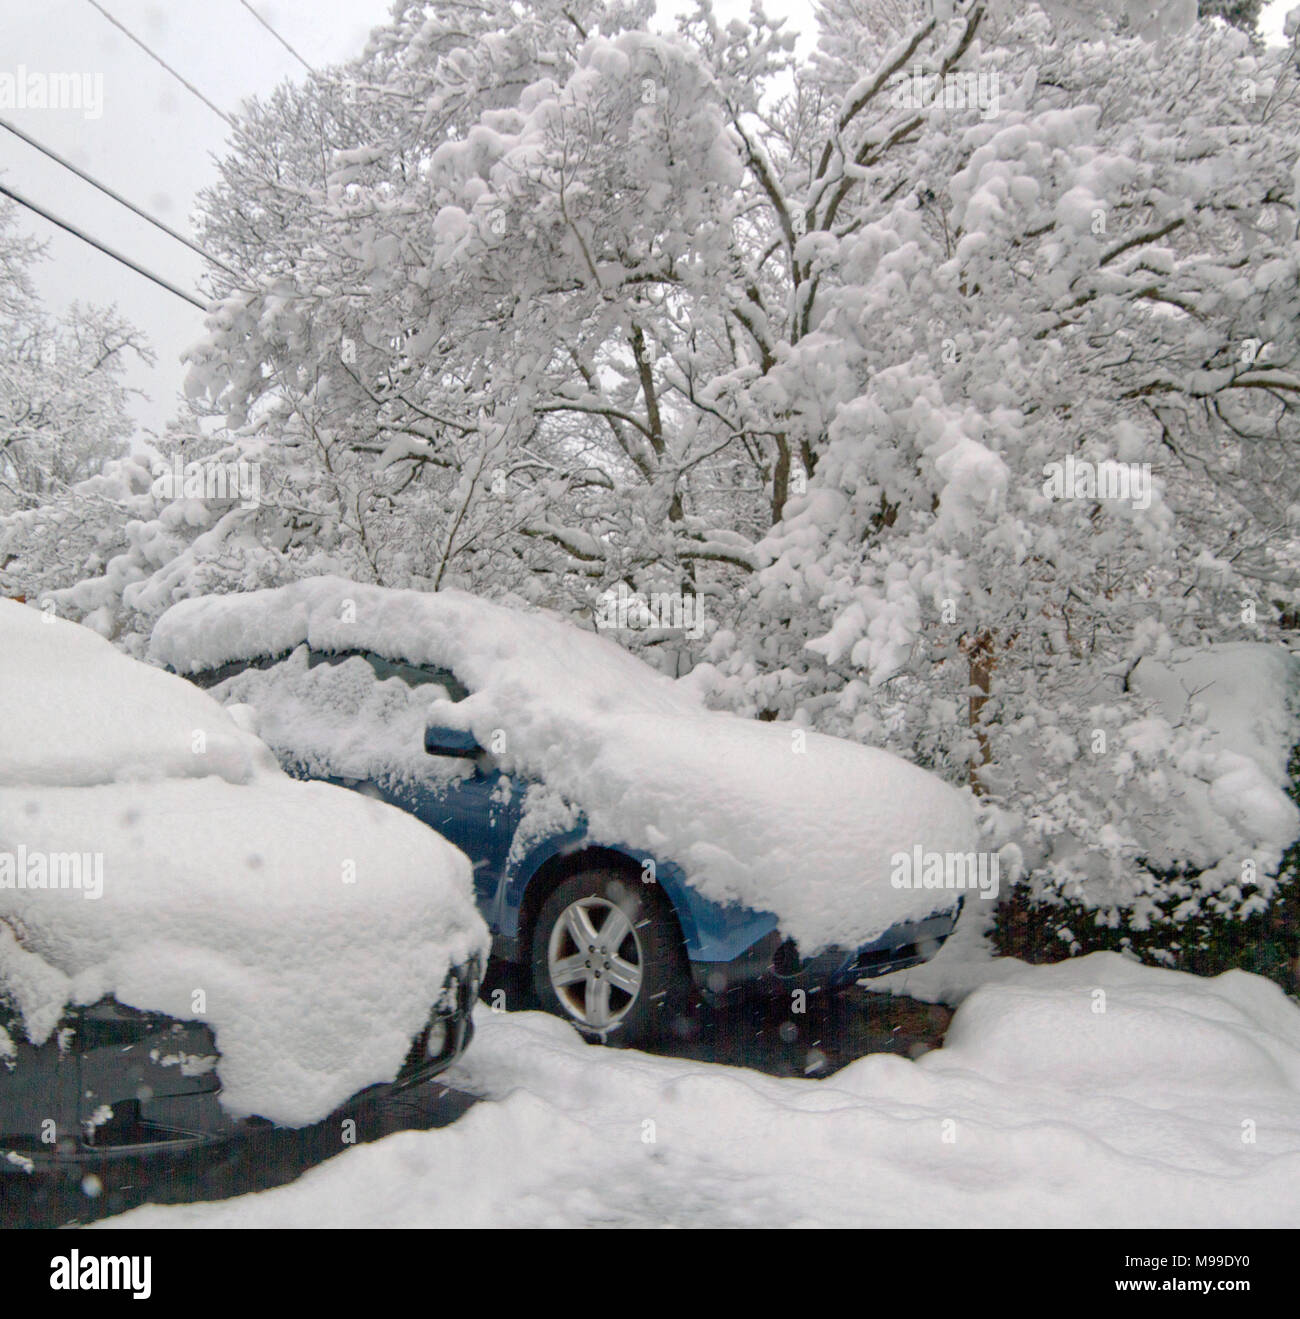 Le poids de la neige couvre deux voitures en stationnement et un arbre en hiver cornouiller Banque D'Images